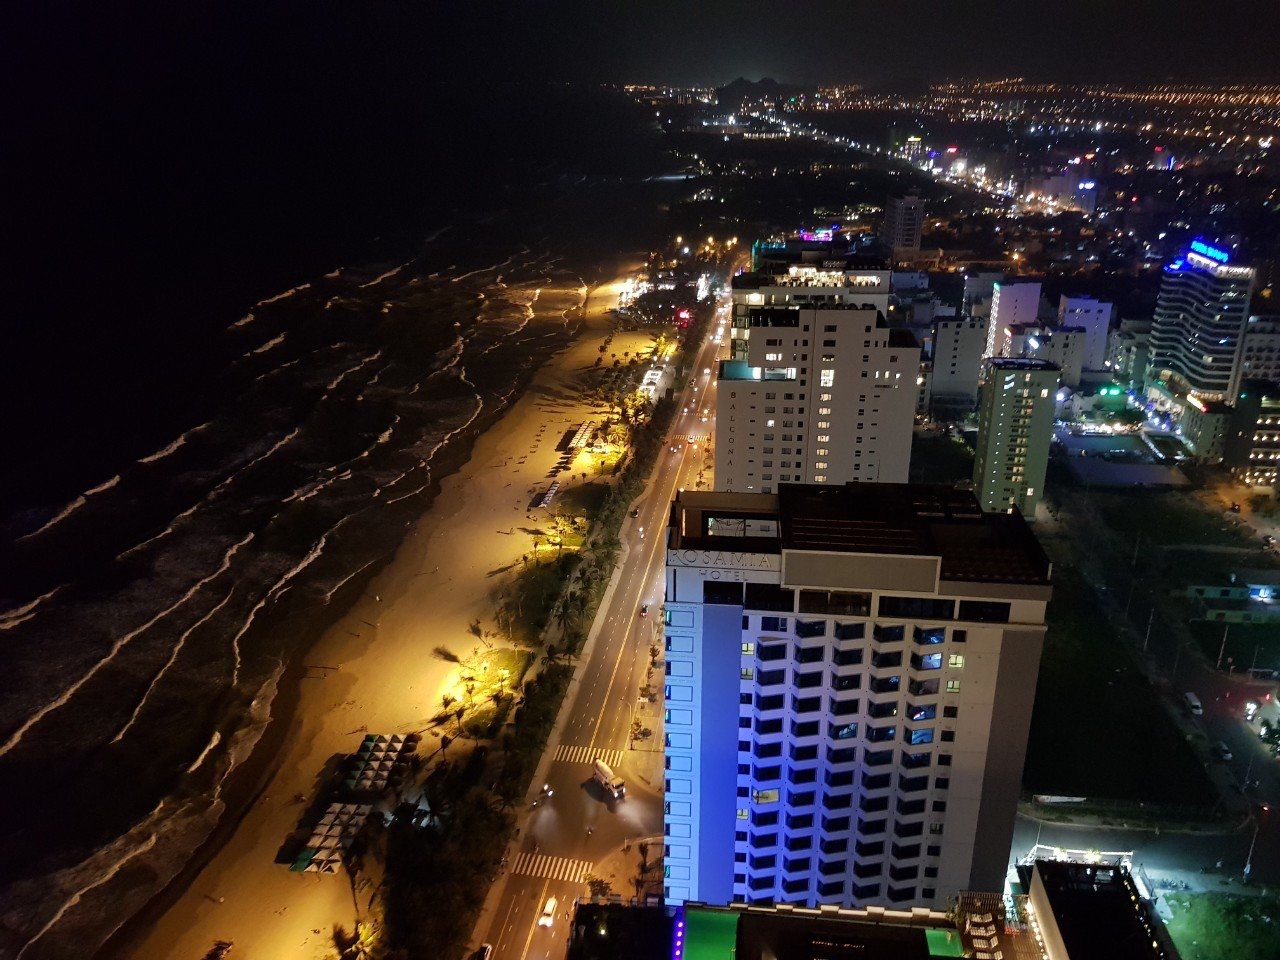 khách sạn biển 5 sao đẹp nhất Đà Nẵng